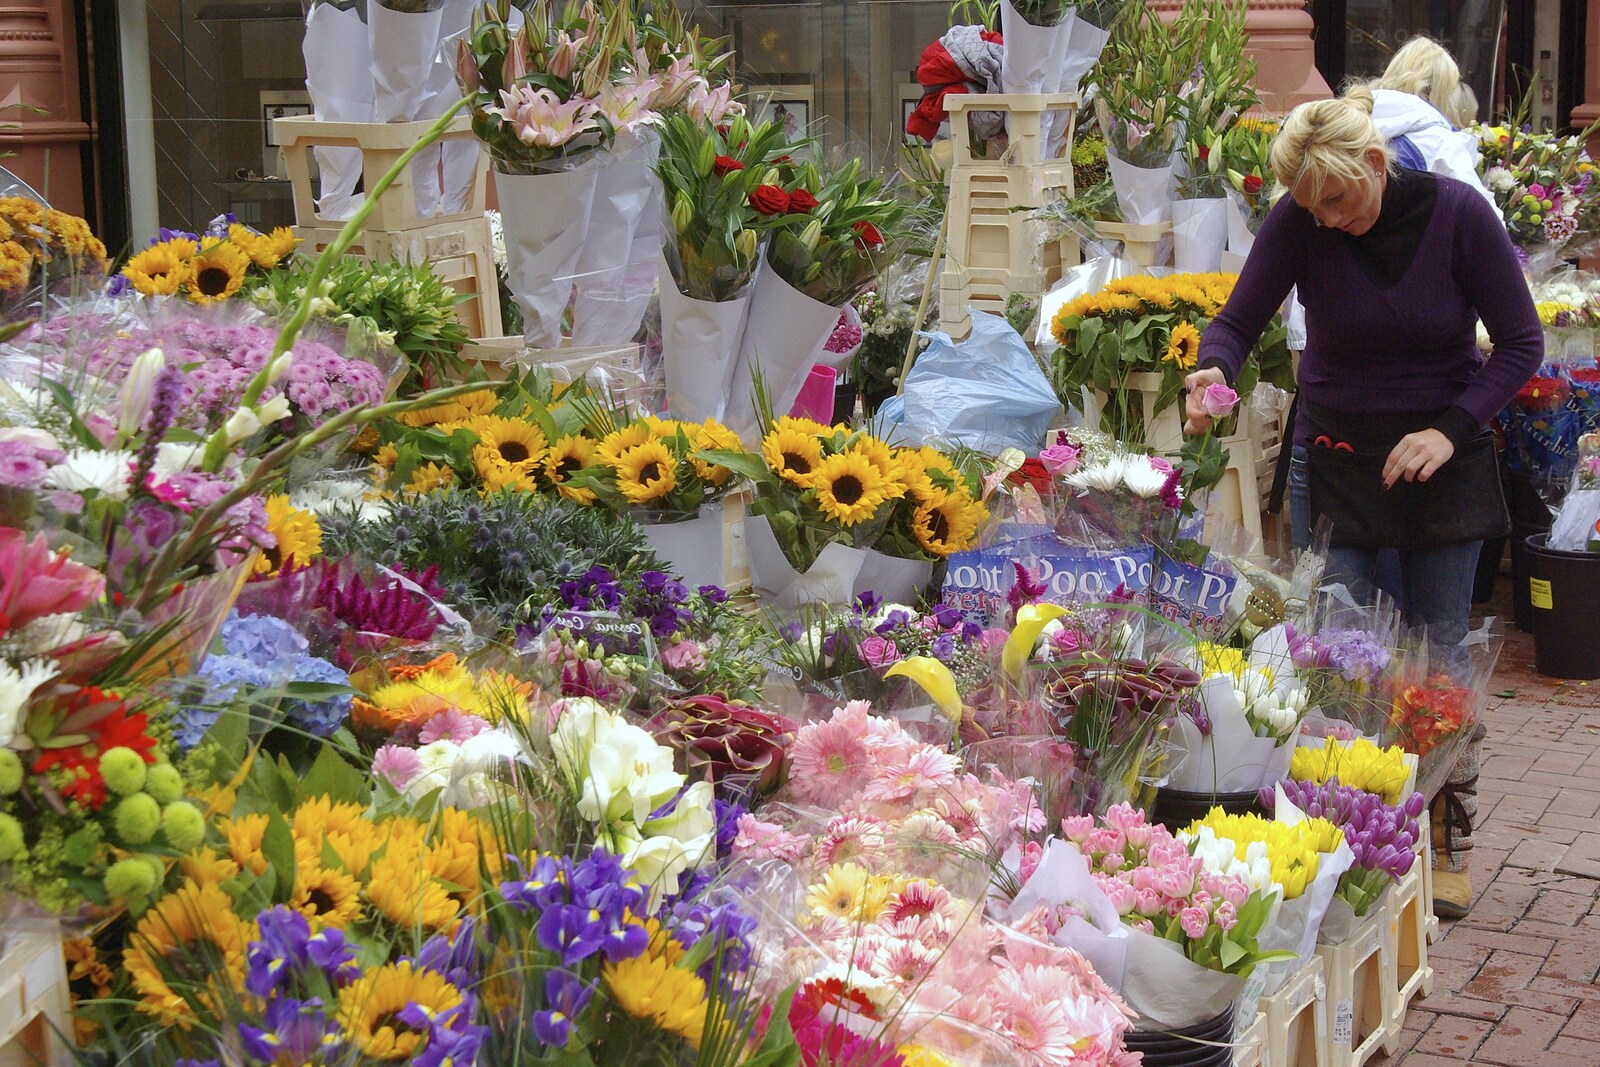 Flower stalls on Grafton Street in Dublin from Blackrock and Dublin, Ireland - 24th September 2007